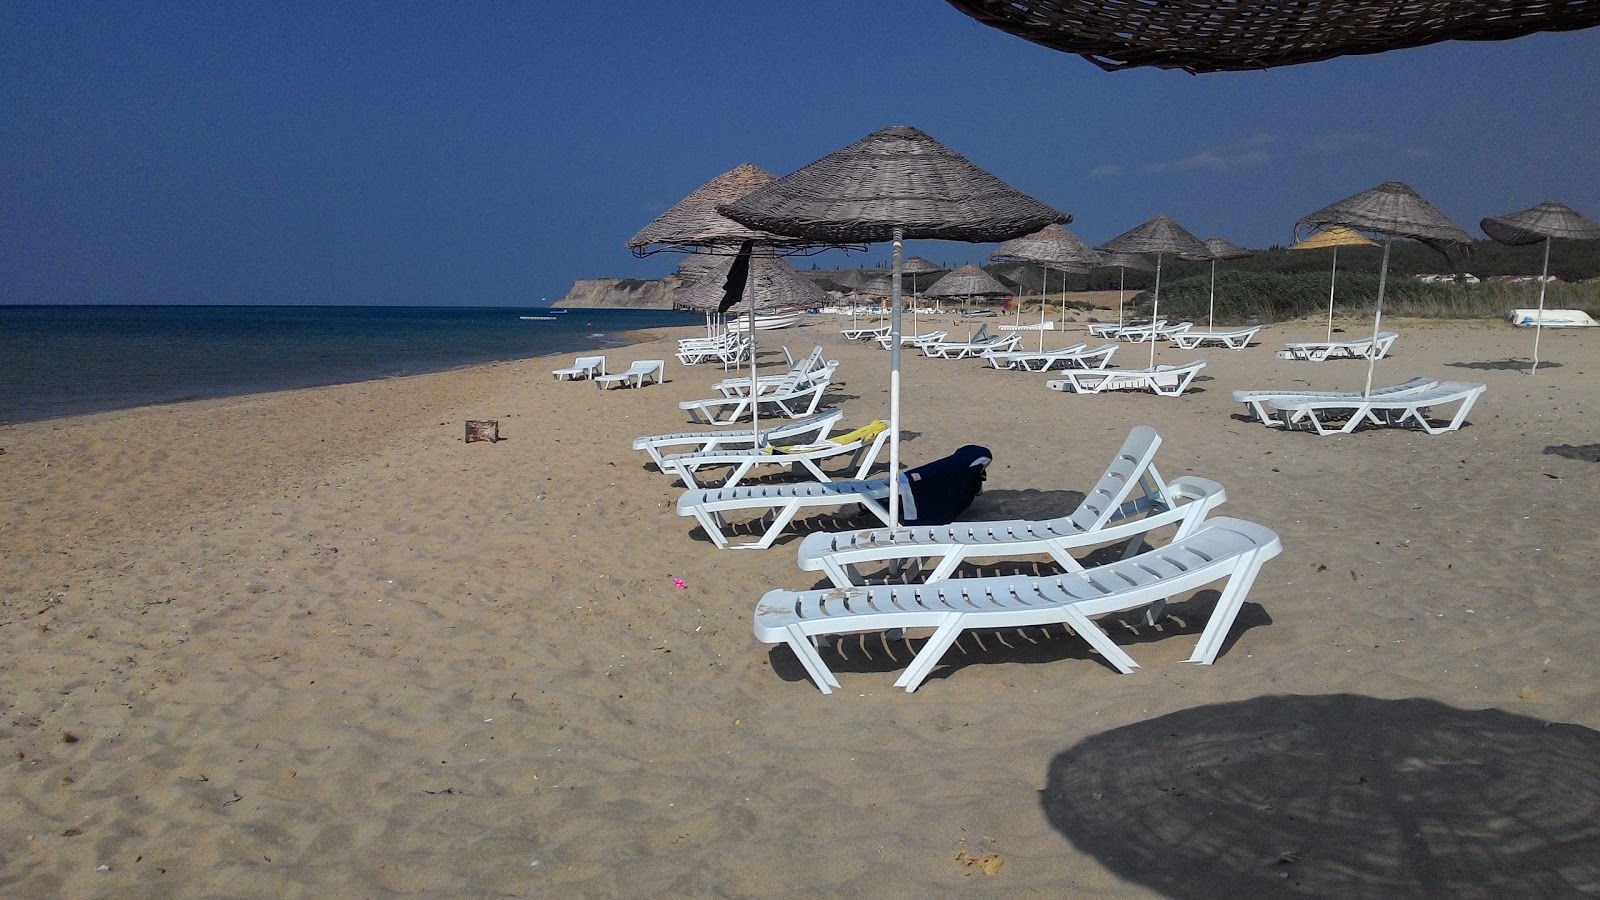 Fotografie cu Gulcavus vllage beach cu plajă spațioasă